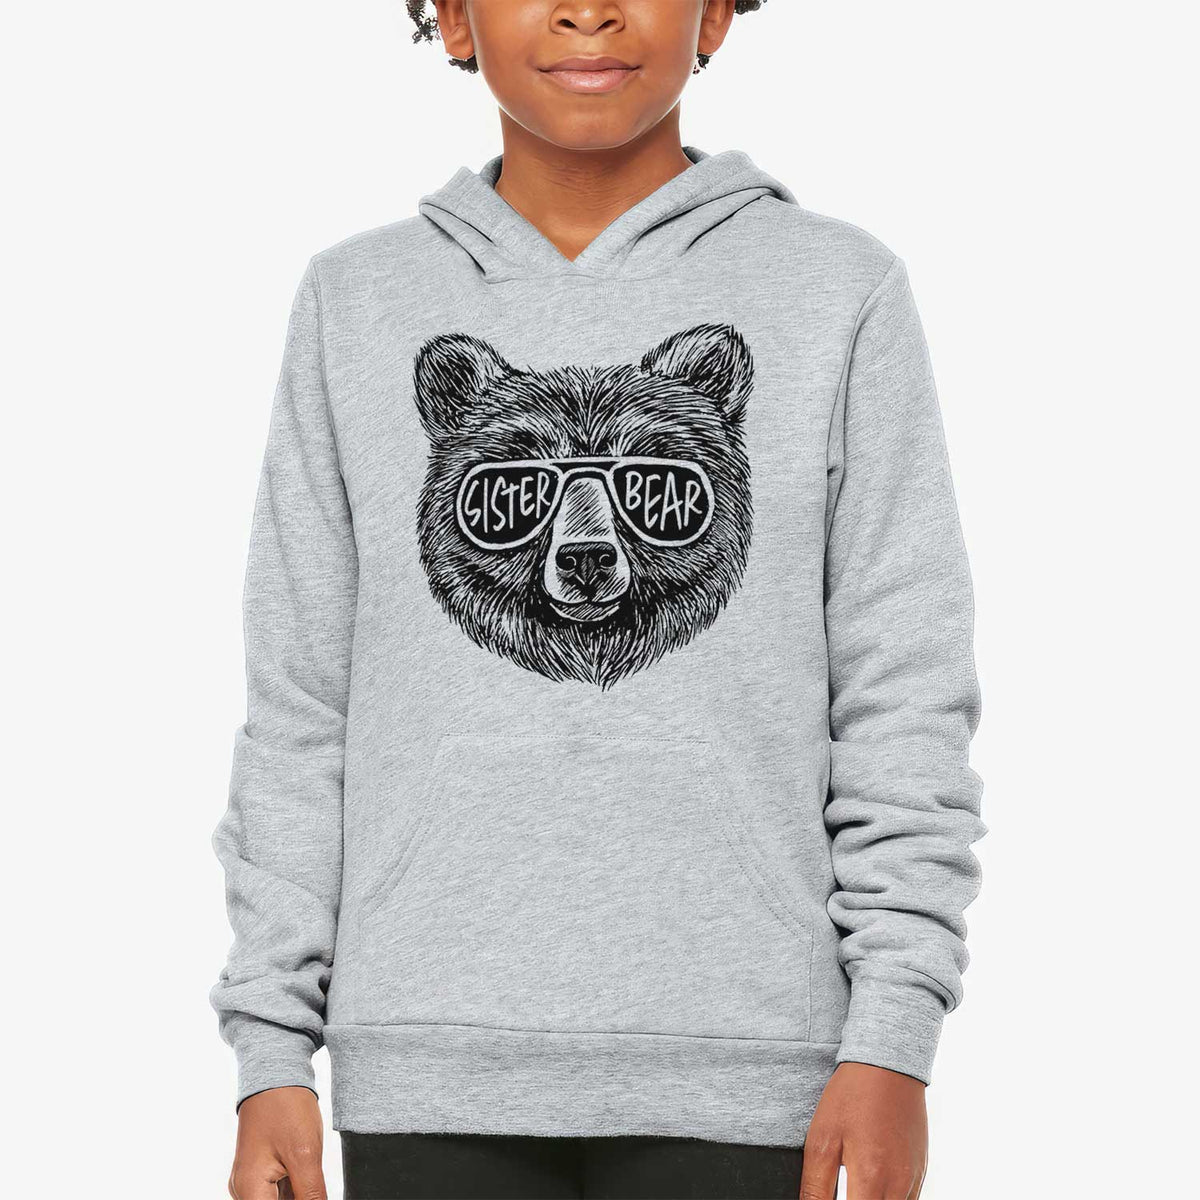 Sister Bear - Youth Hoodie Sweatshirt